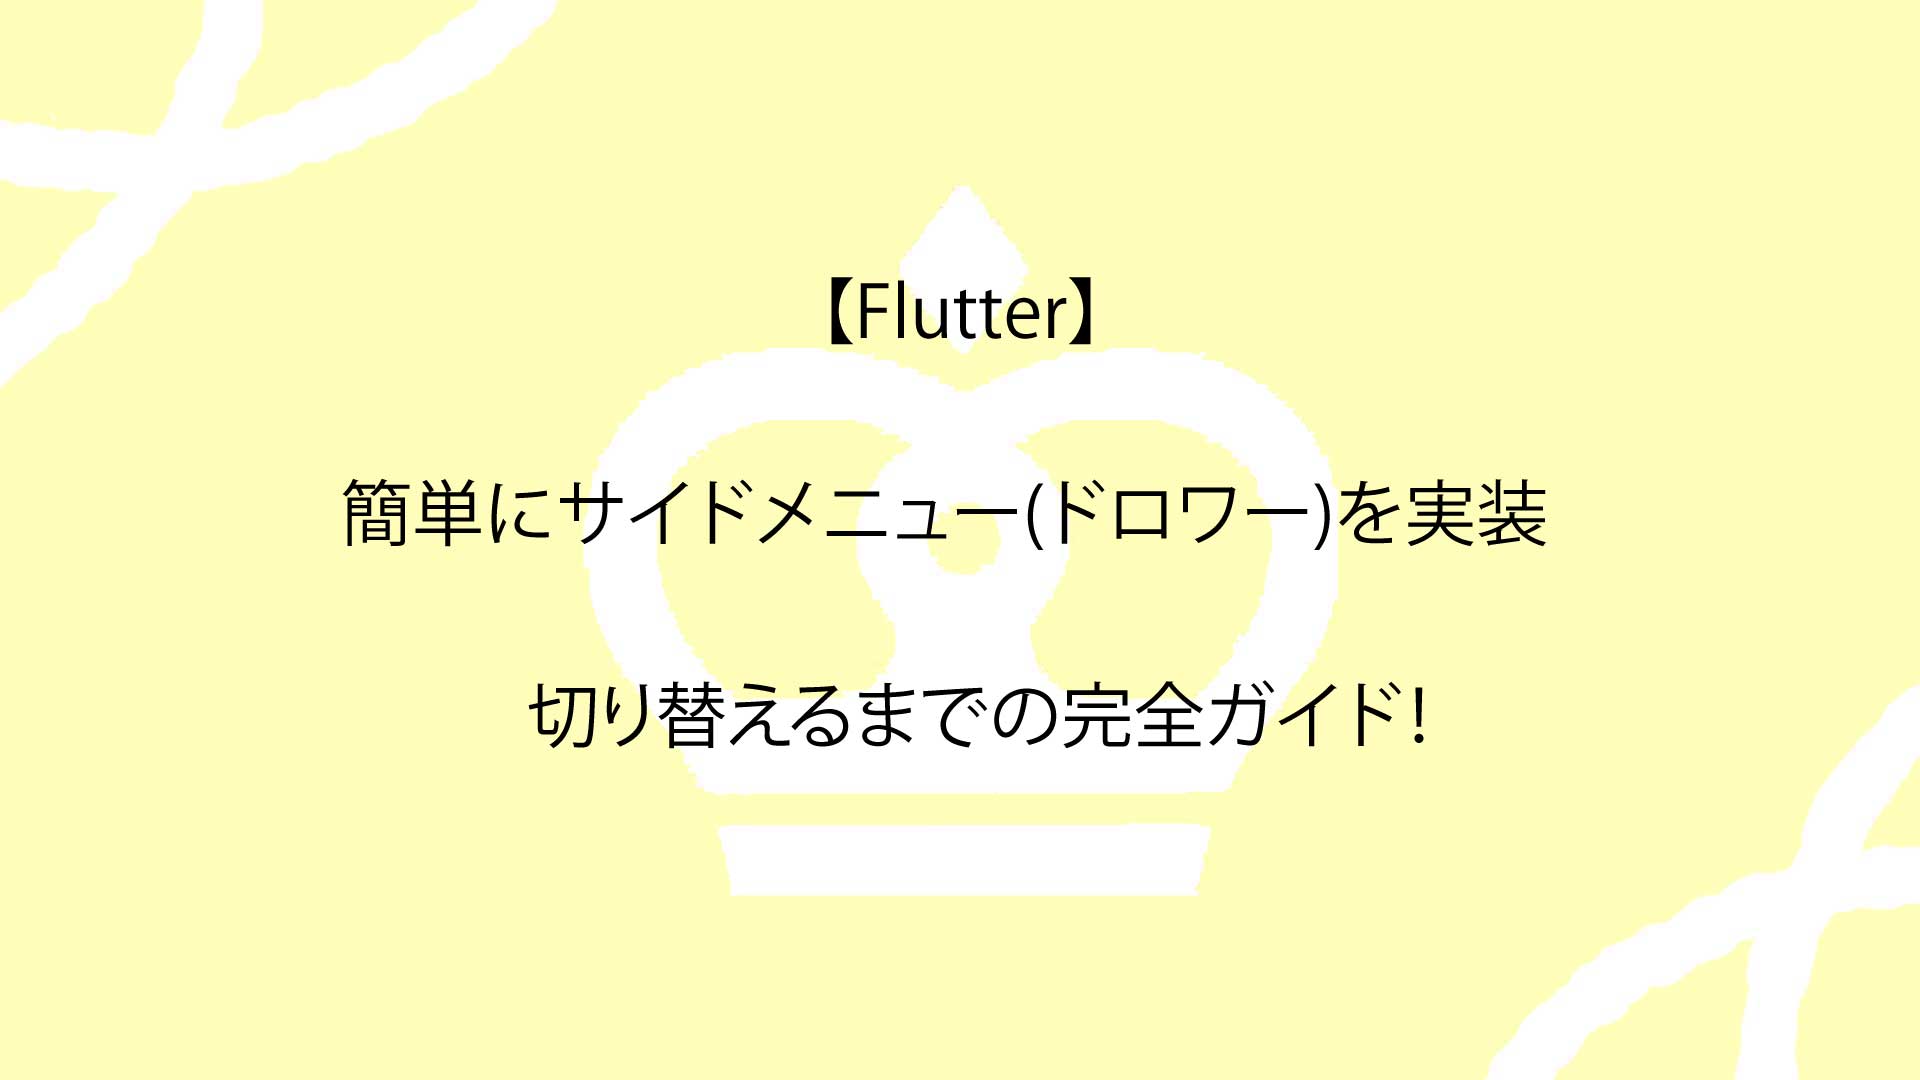 【Flutter】簡単にサイドメニュー(ドロワー)を実装し切り替えるまでの完全ガイド！